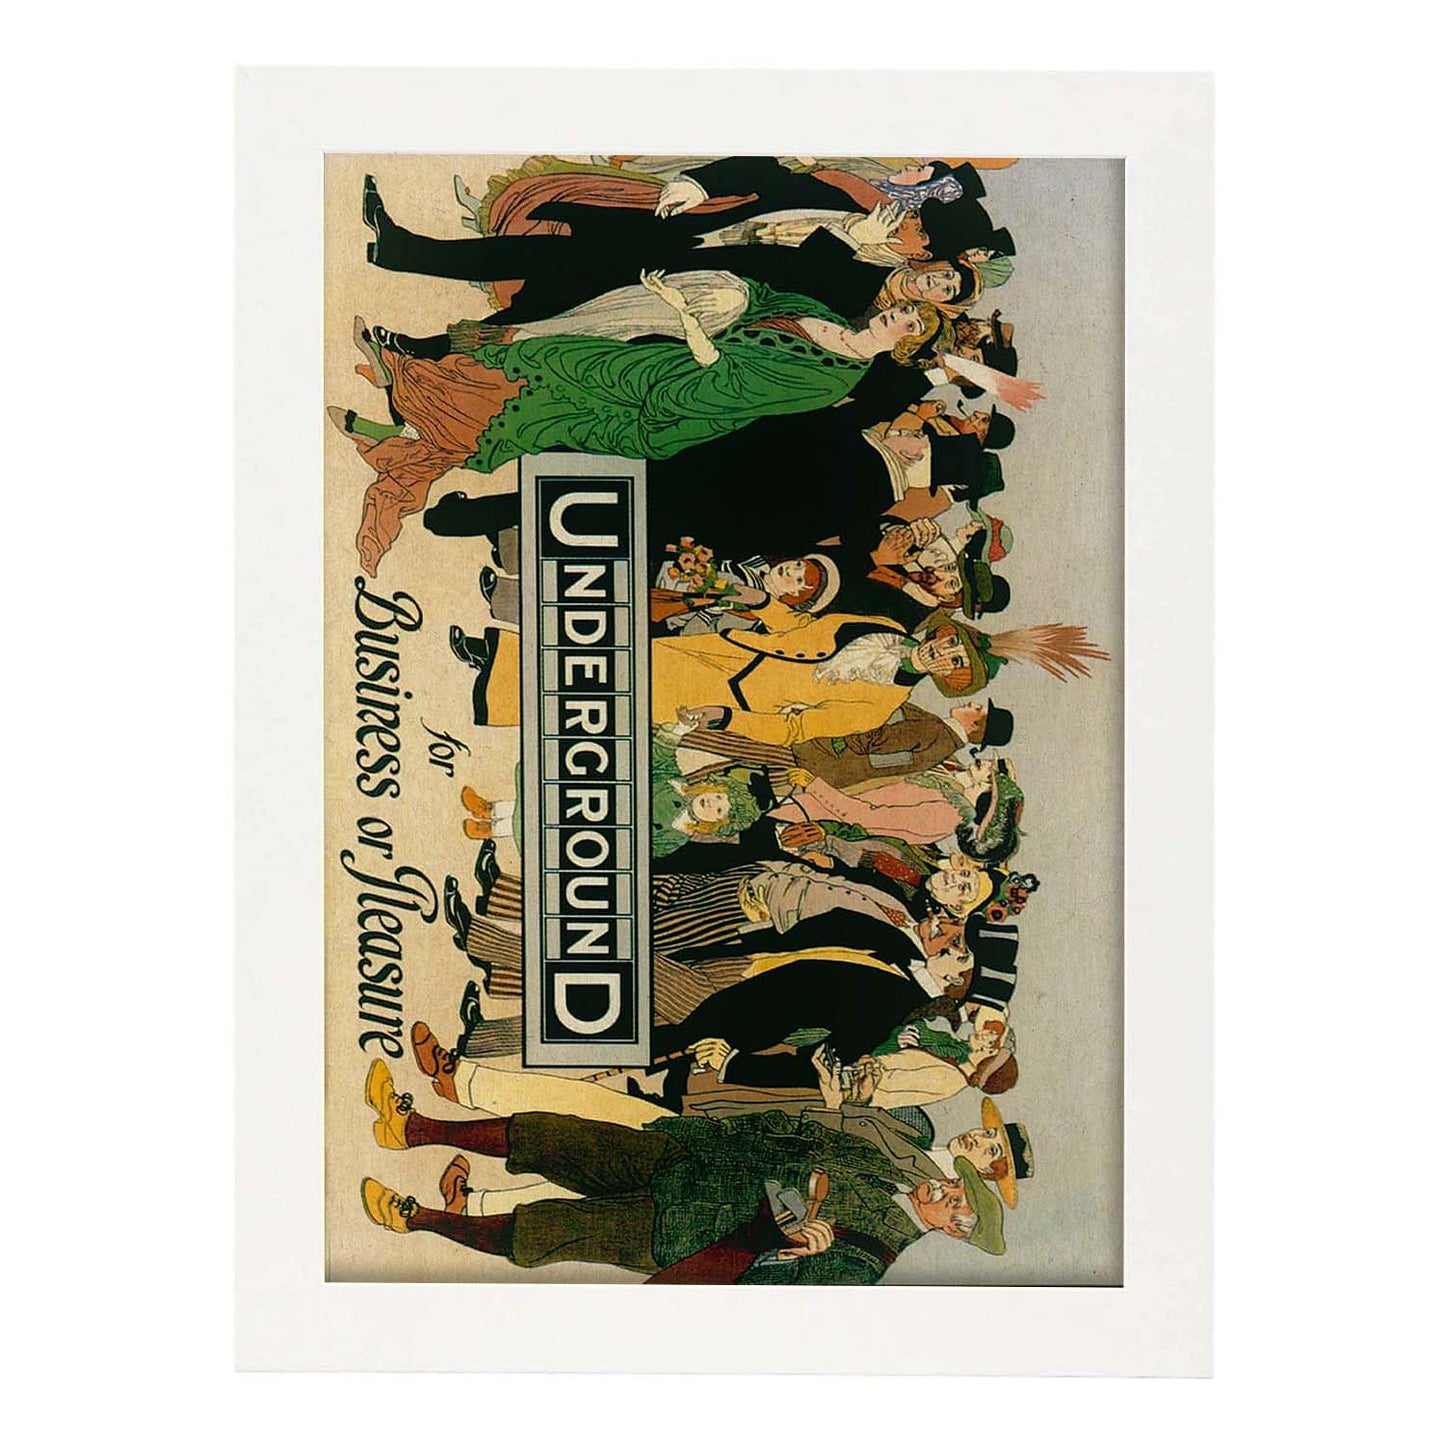 Poster vintage. Cartel vintage de Europa. Metro de Londres, 1913.-Artwork-Nacnic-A4-Marco Blanco-Nacnic Estudio SL